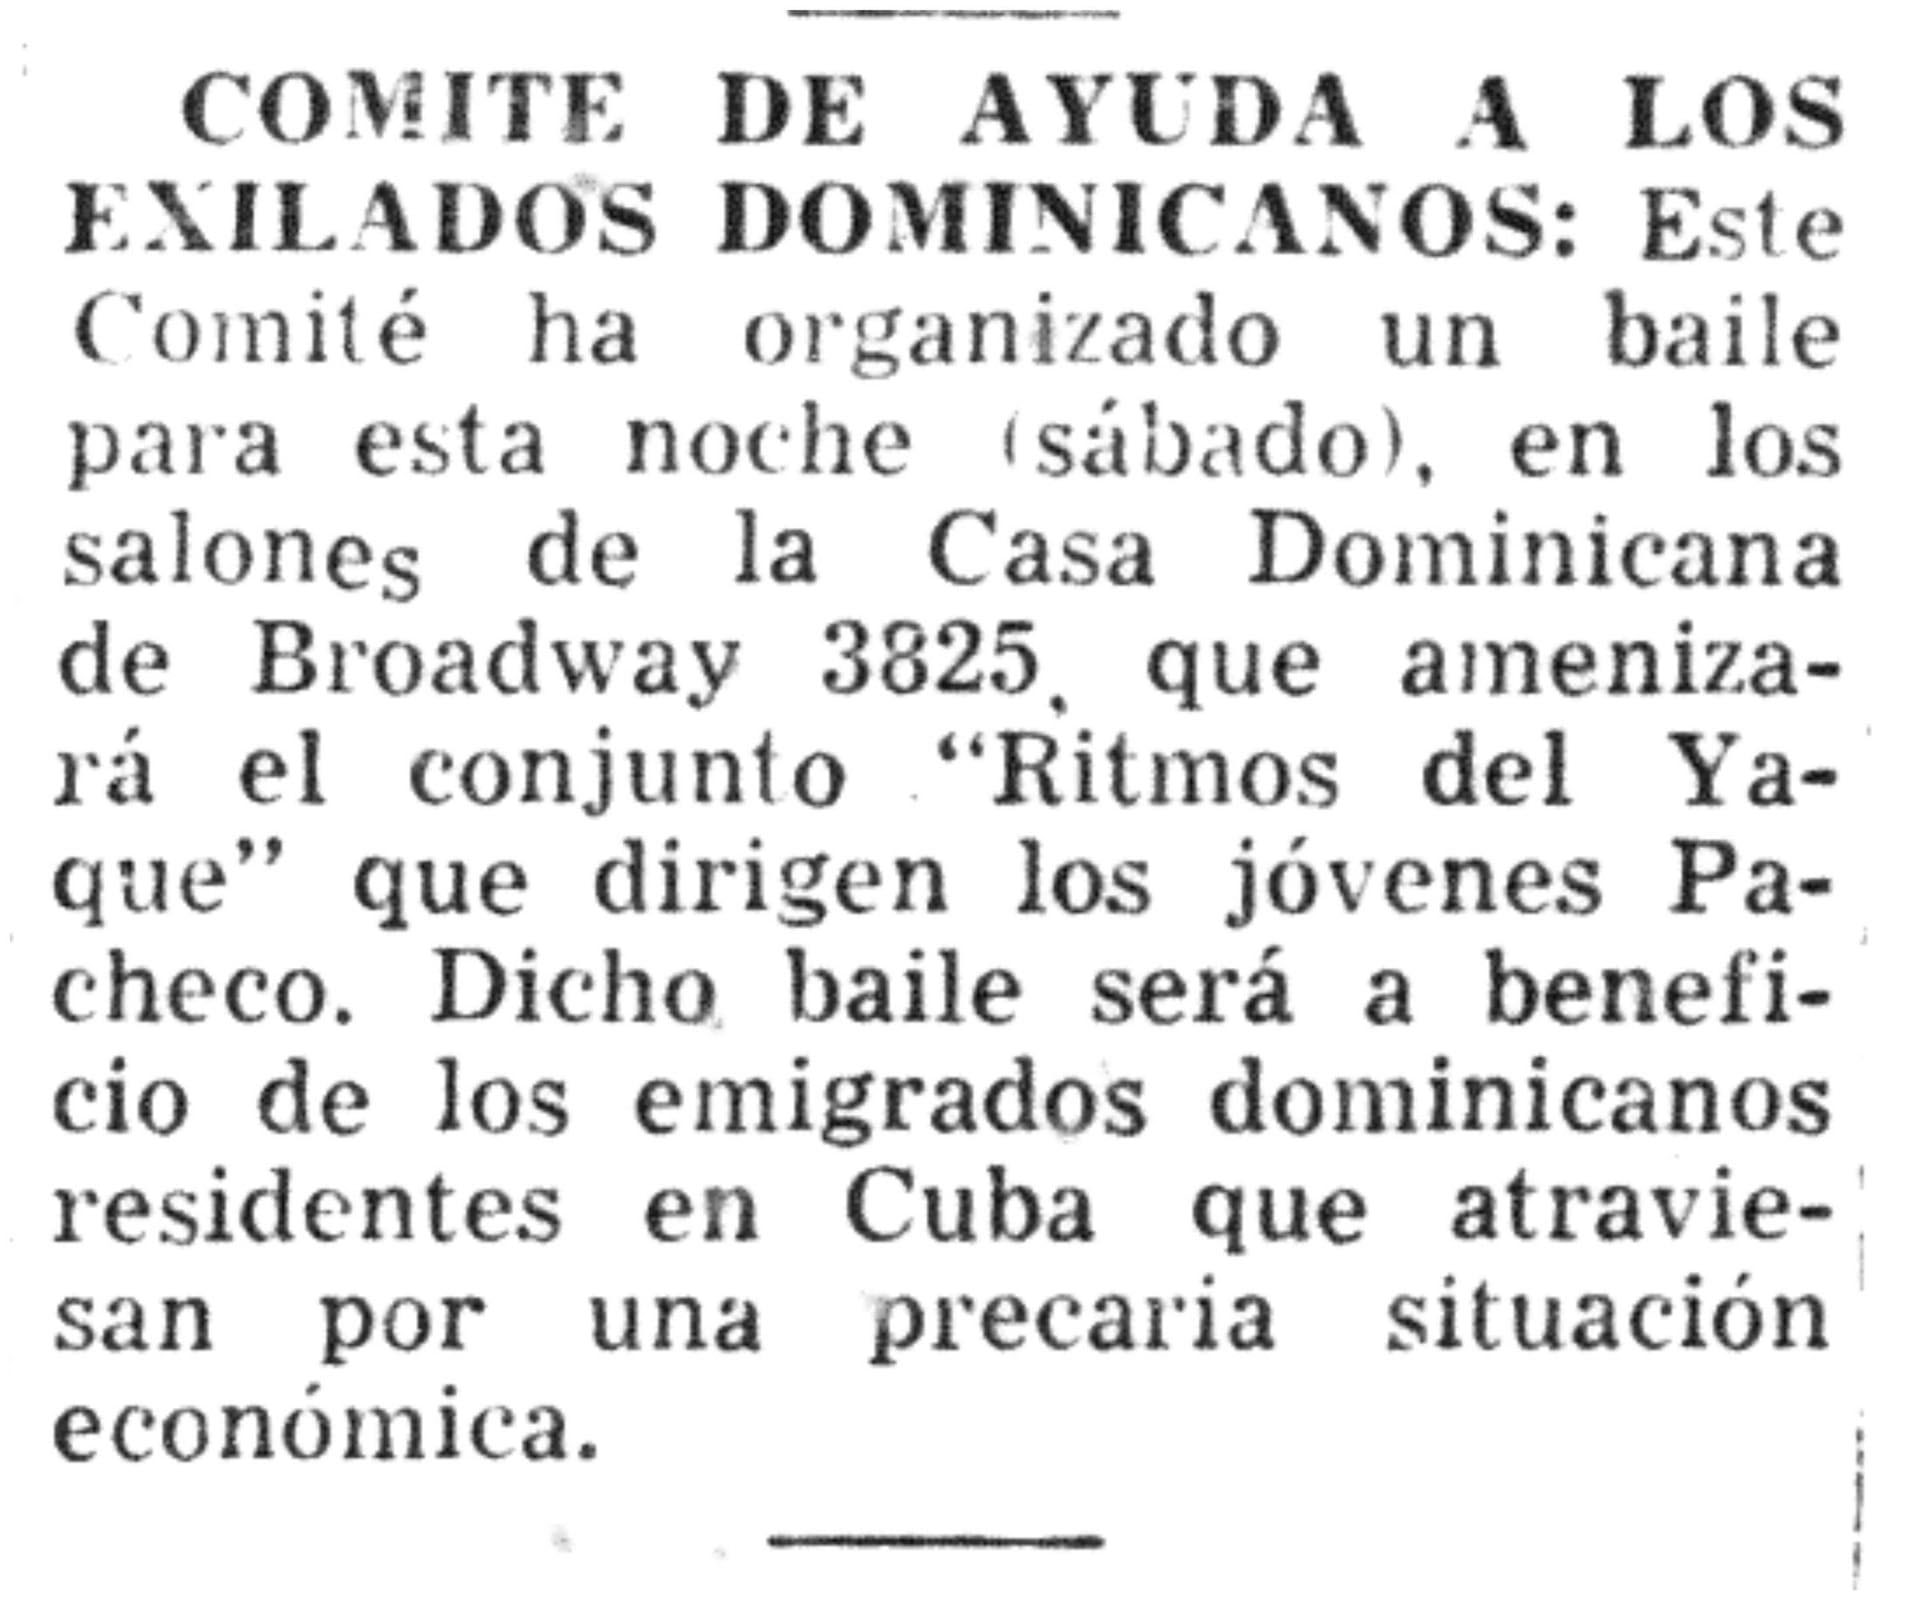 Comité de ayuda a los exilados dominicanos, April 18,1954